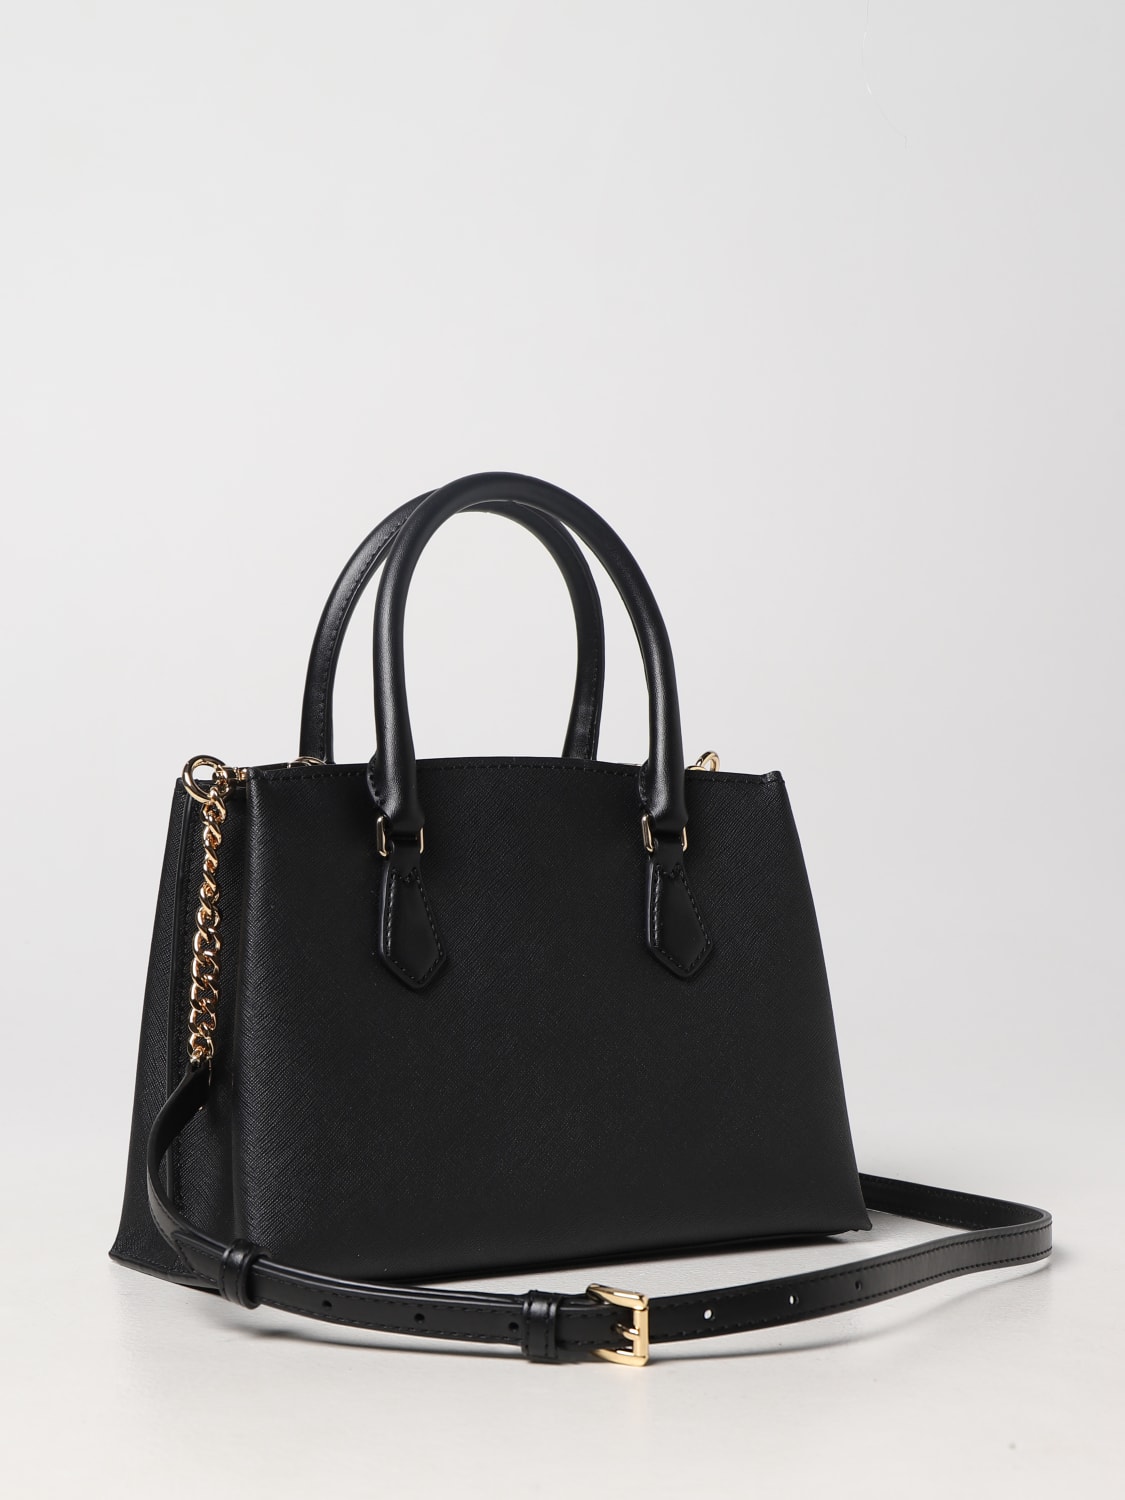 Michael Michael Kors Ruby Small Leather Handbag